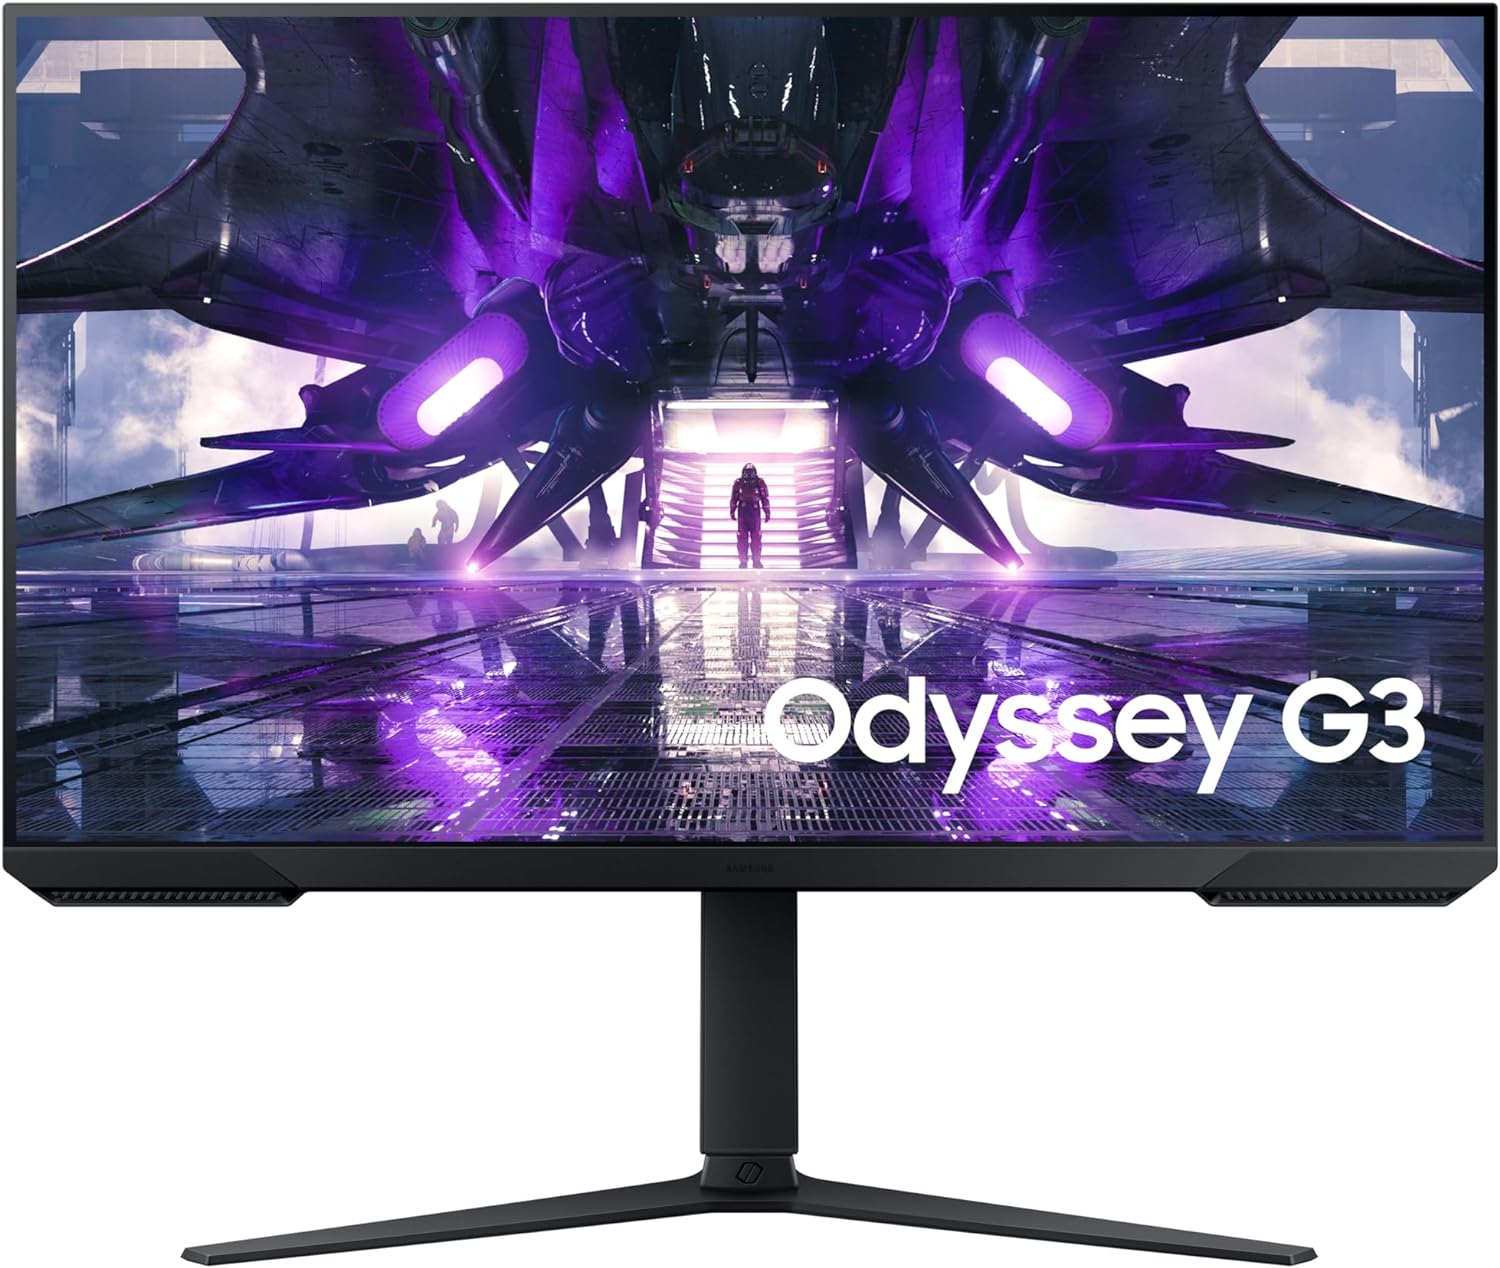 L'écran PC Samsung Odyssey G3 profite d'une réduction attractive grâce à  cette astuce